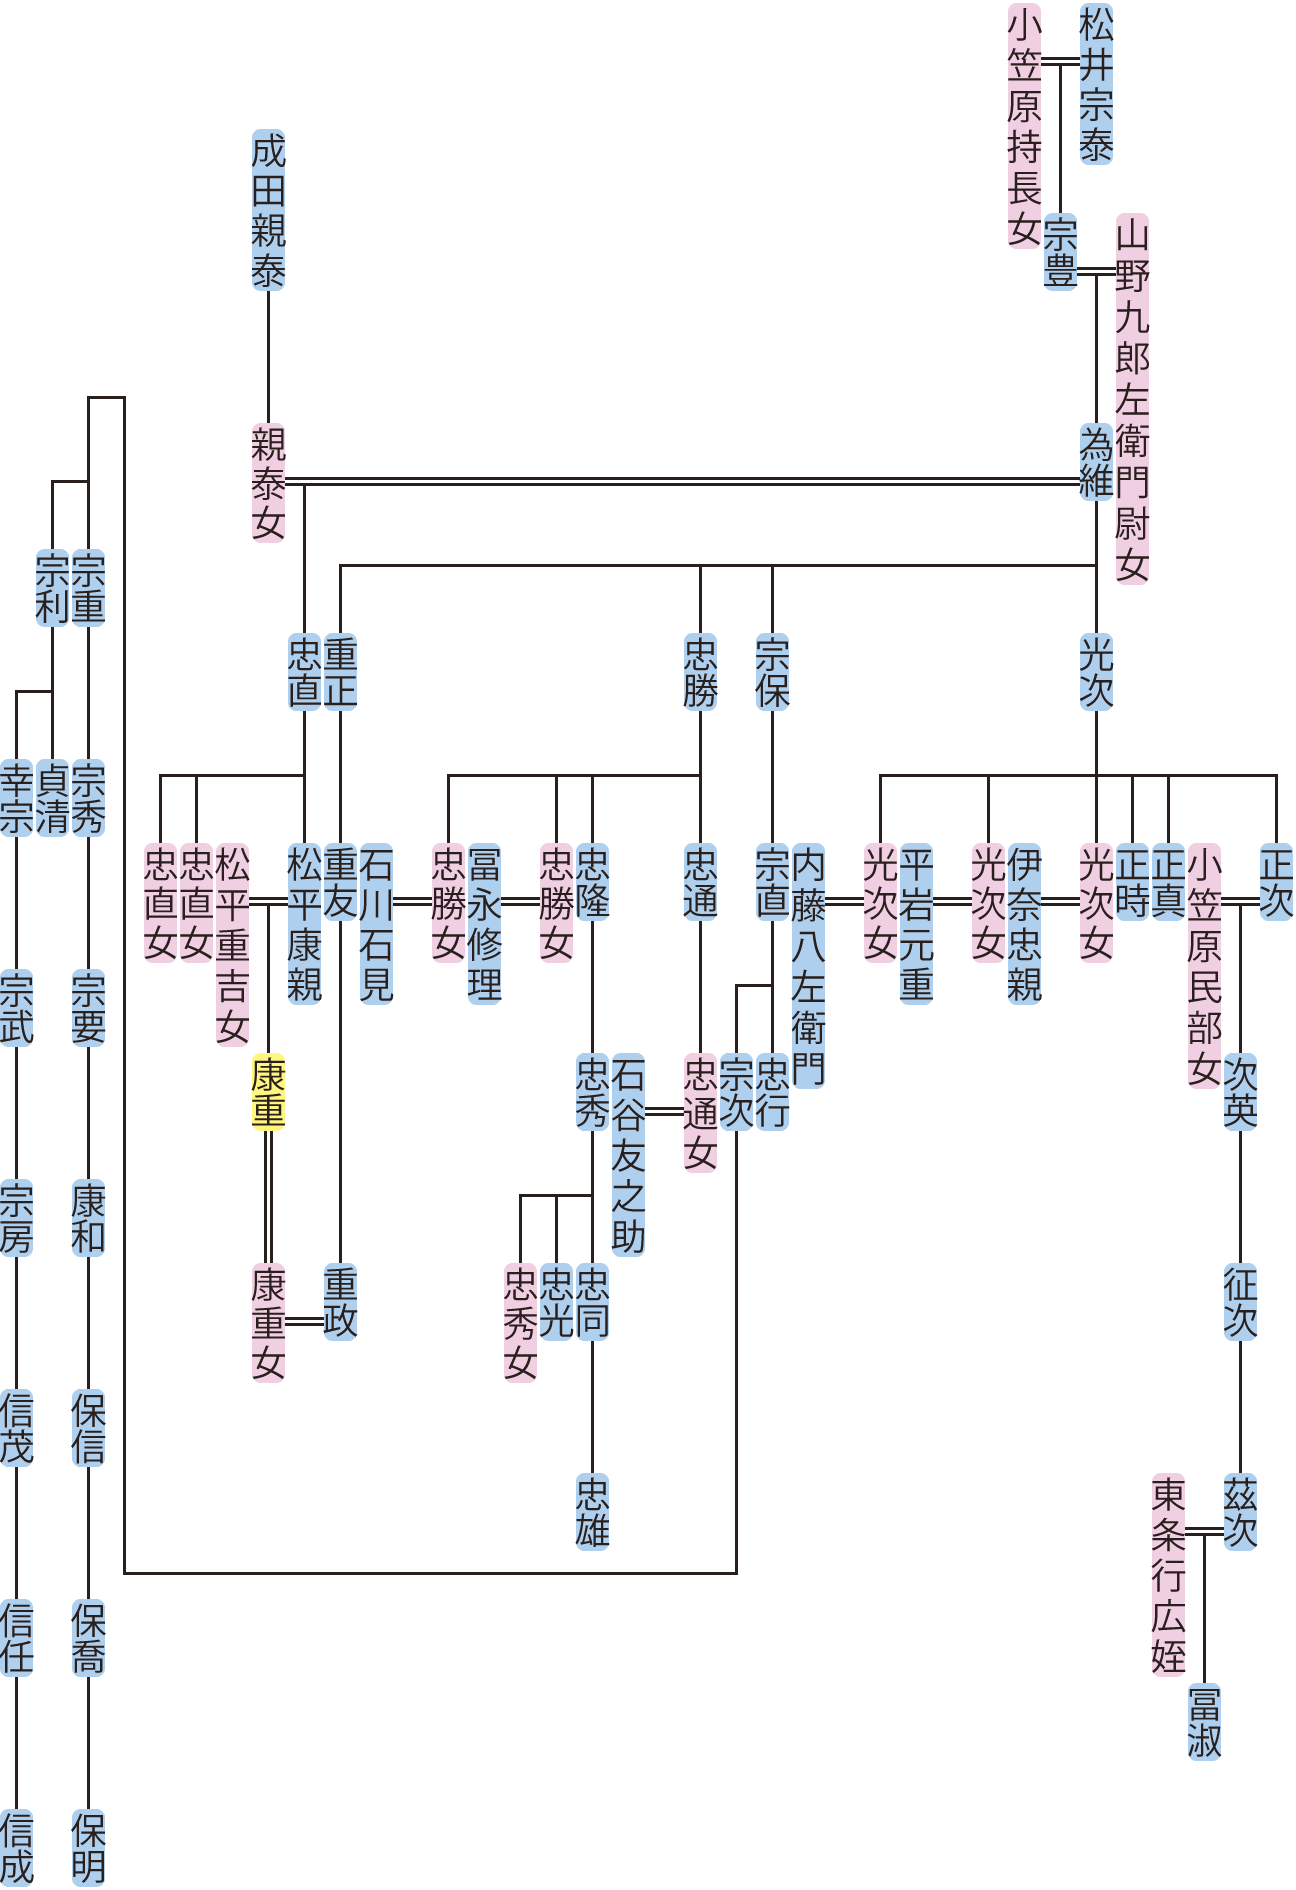 松井為維の系図